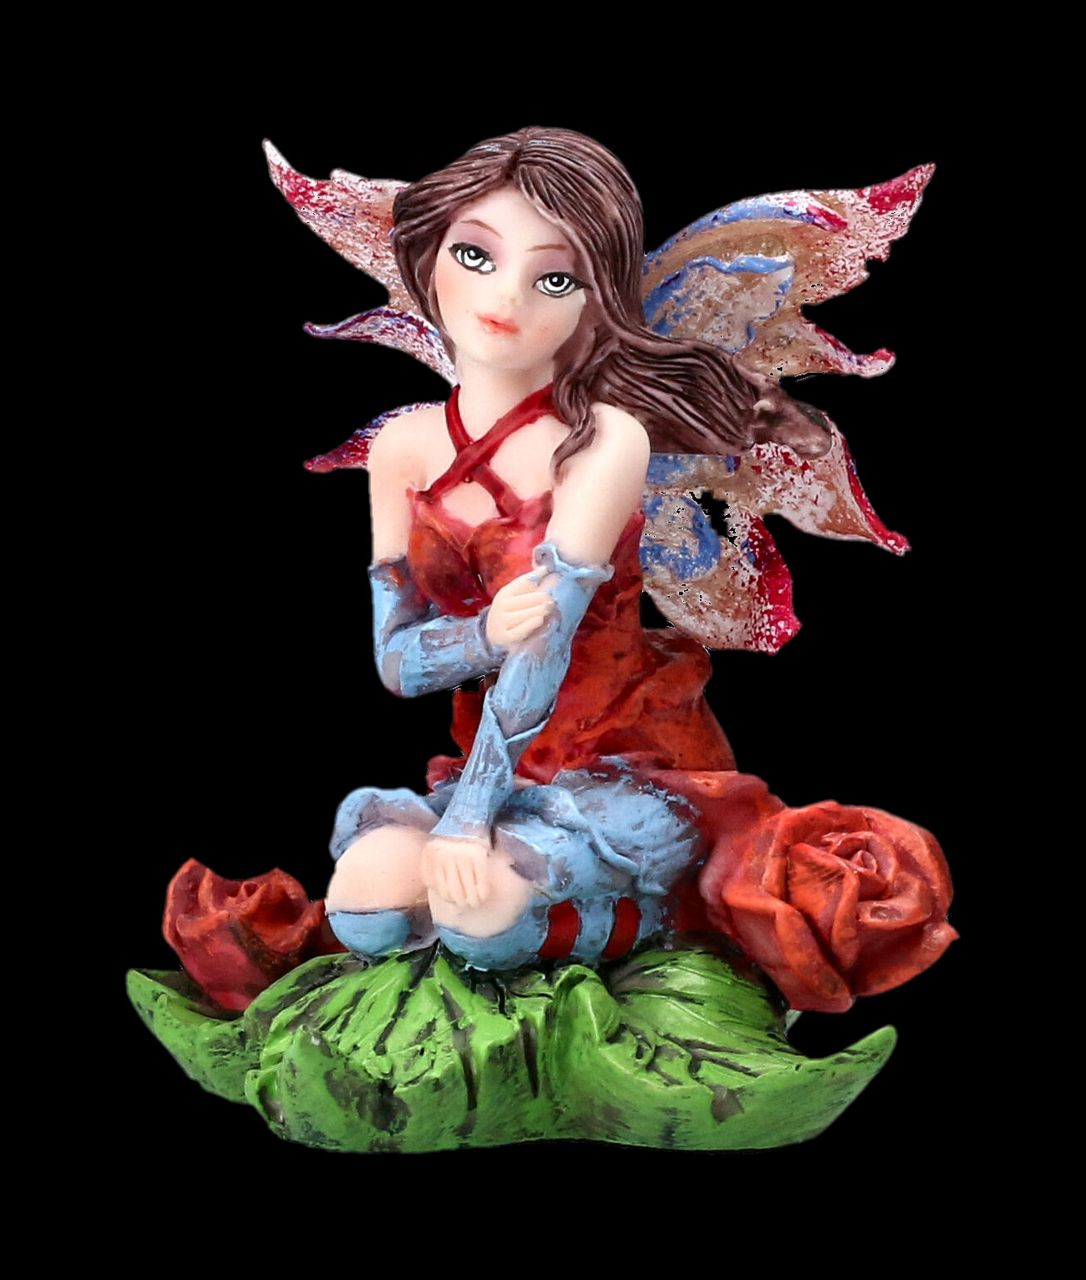 Fairy Figurine - Mini Fairy with Roses